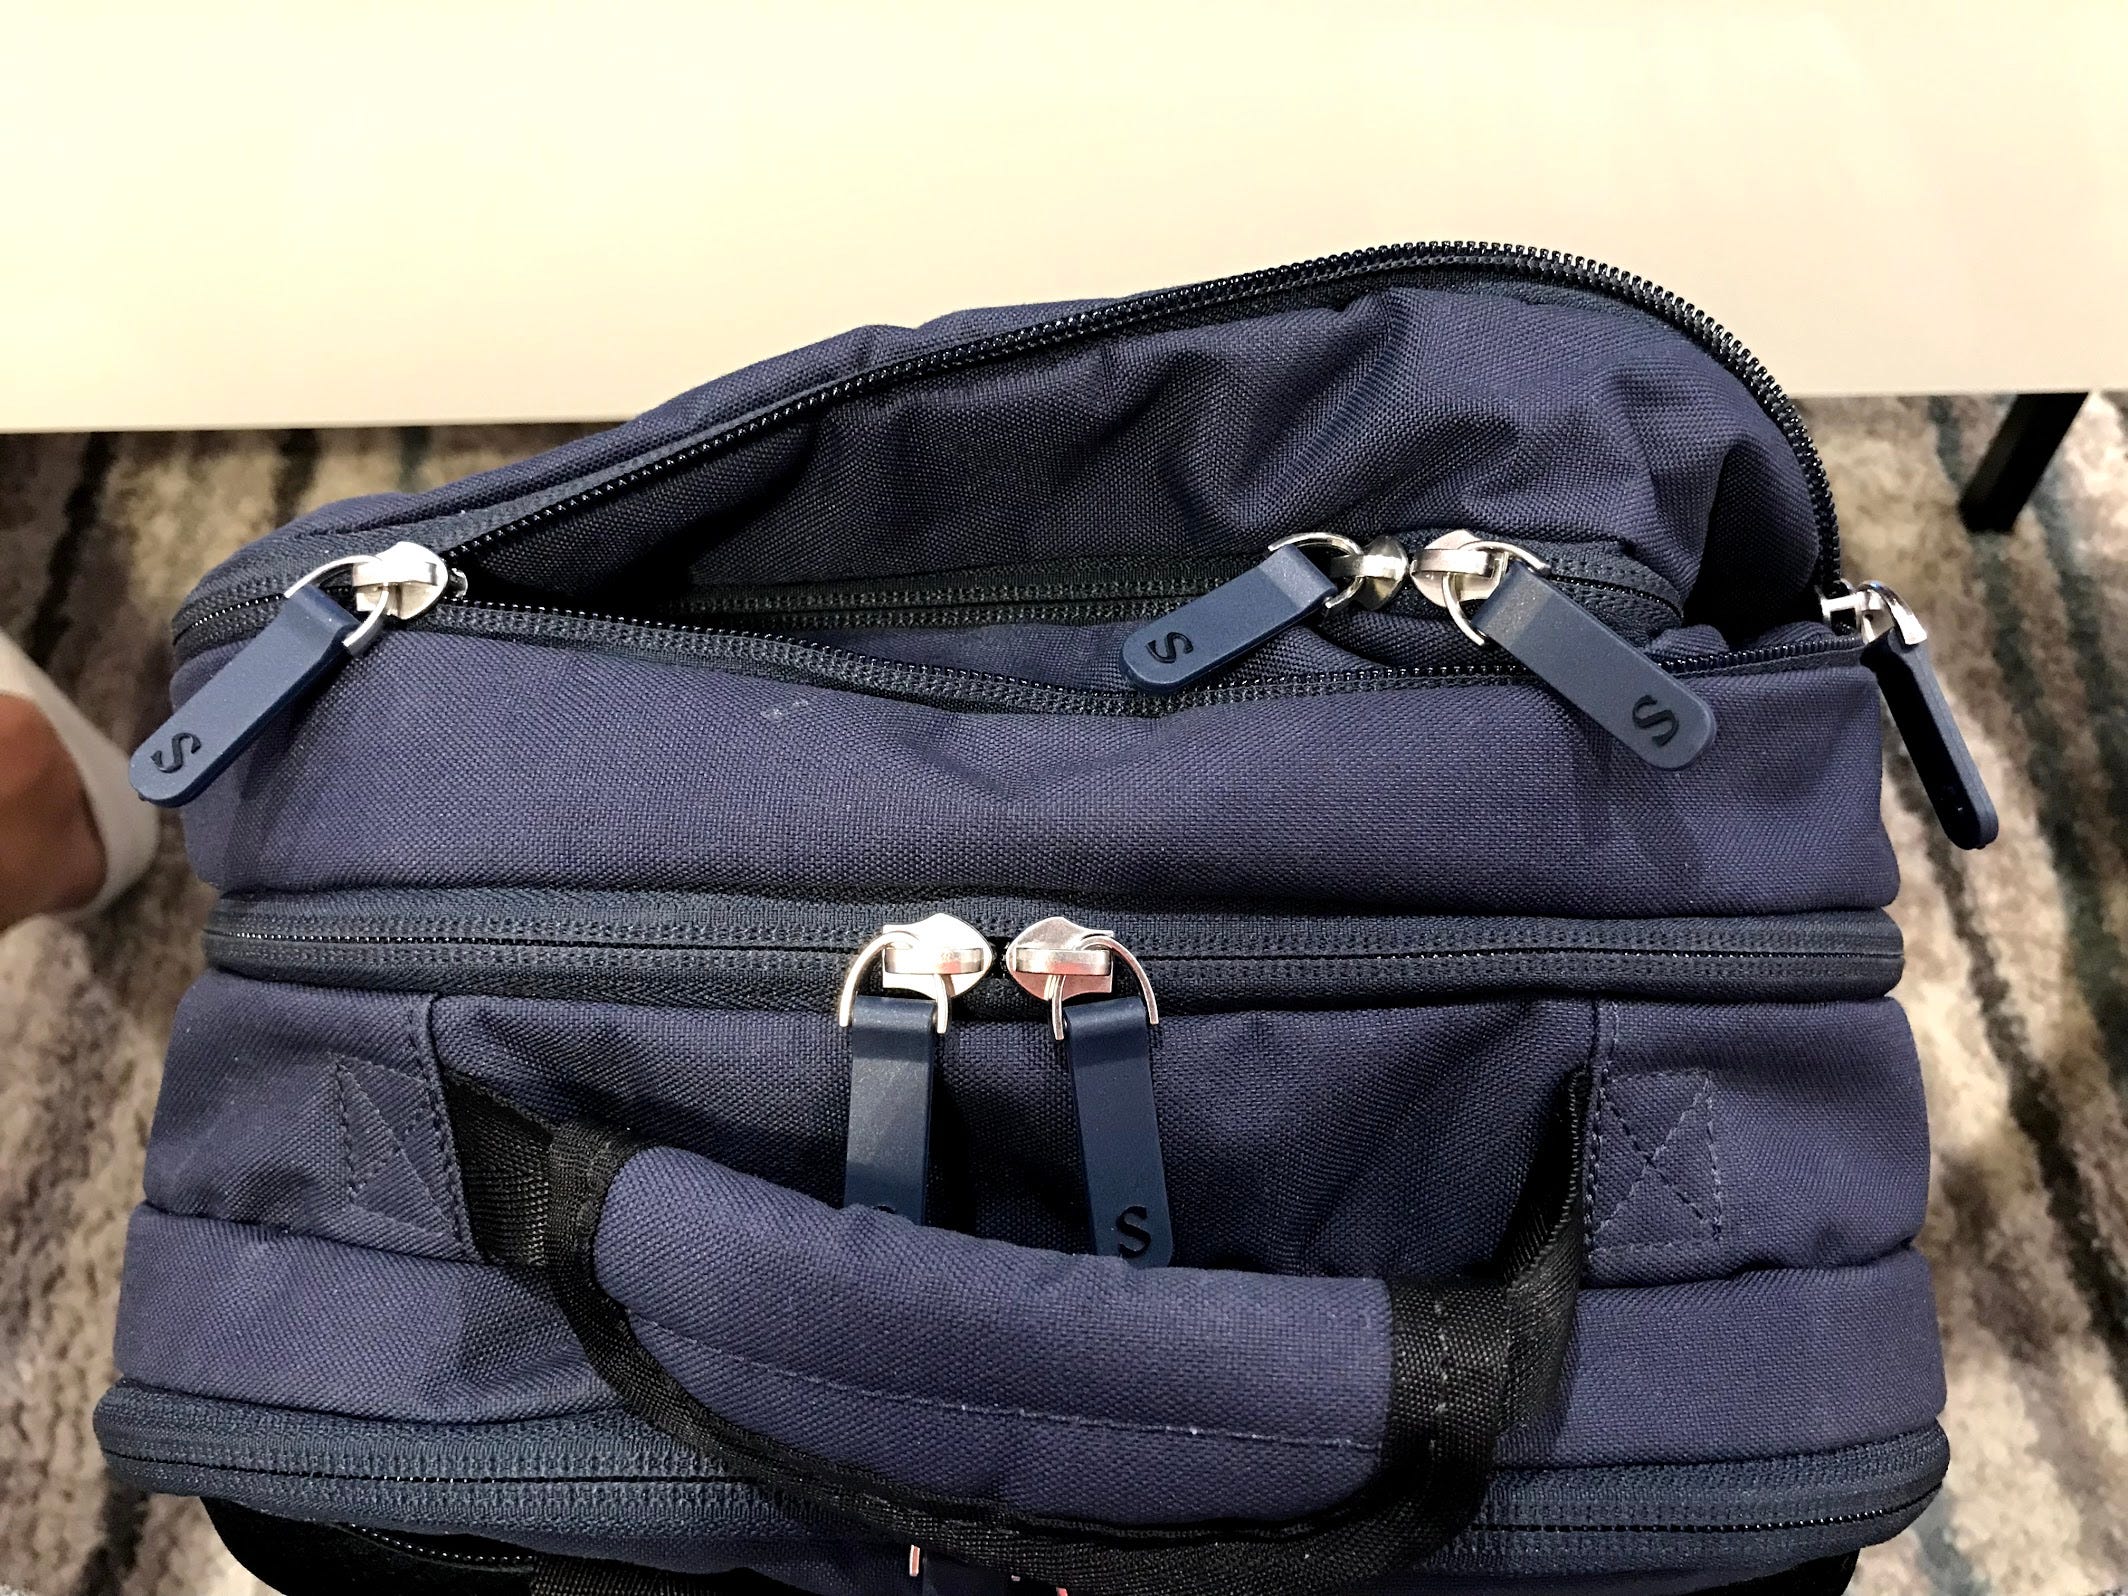 Stolt Alpha — Commuter Bag Review | by Matt Chan | Pangolins with Packs